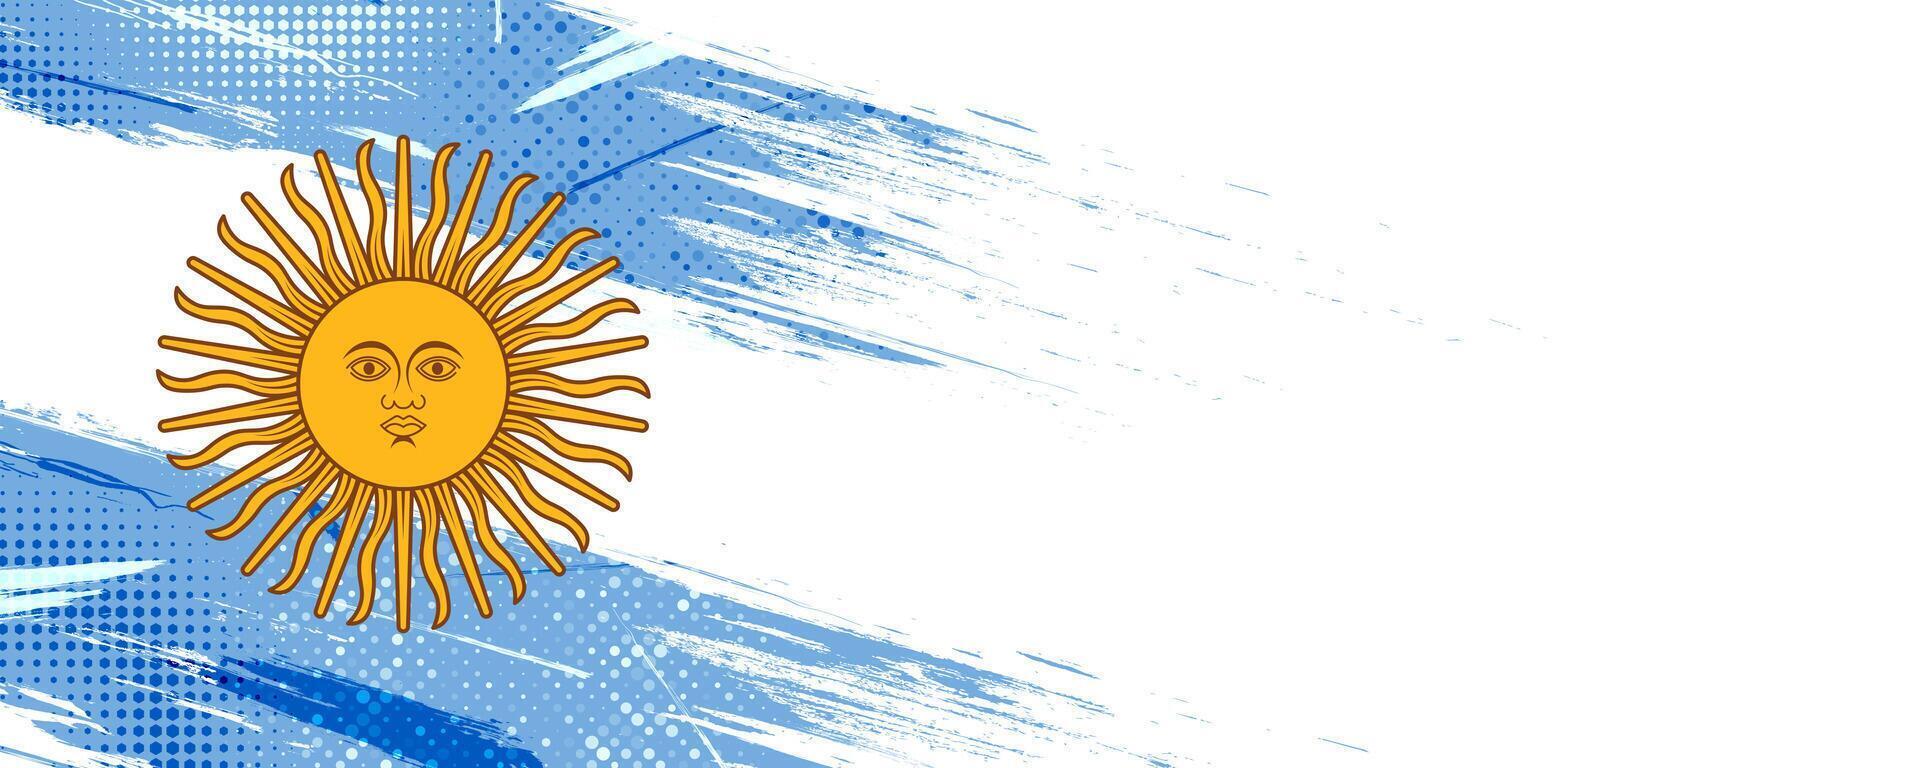 argentina bandera en grunge cepillo pintar estilo con trama de semitonos efecto. argentino bandera en grunge concepto vector